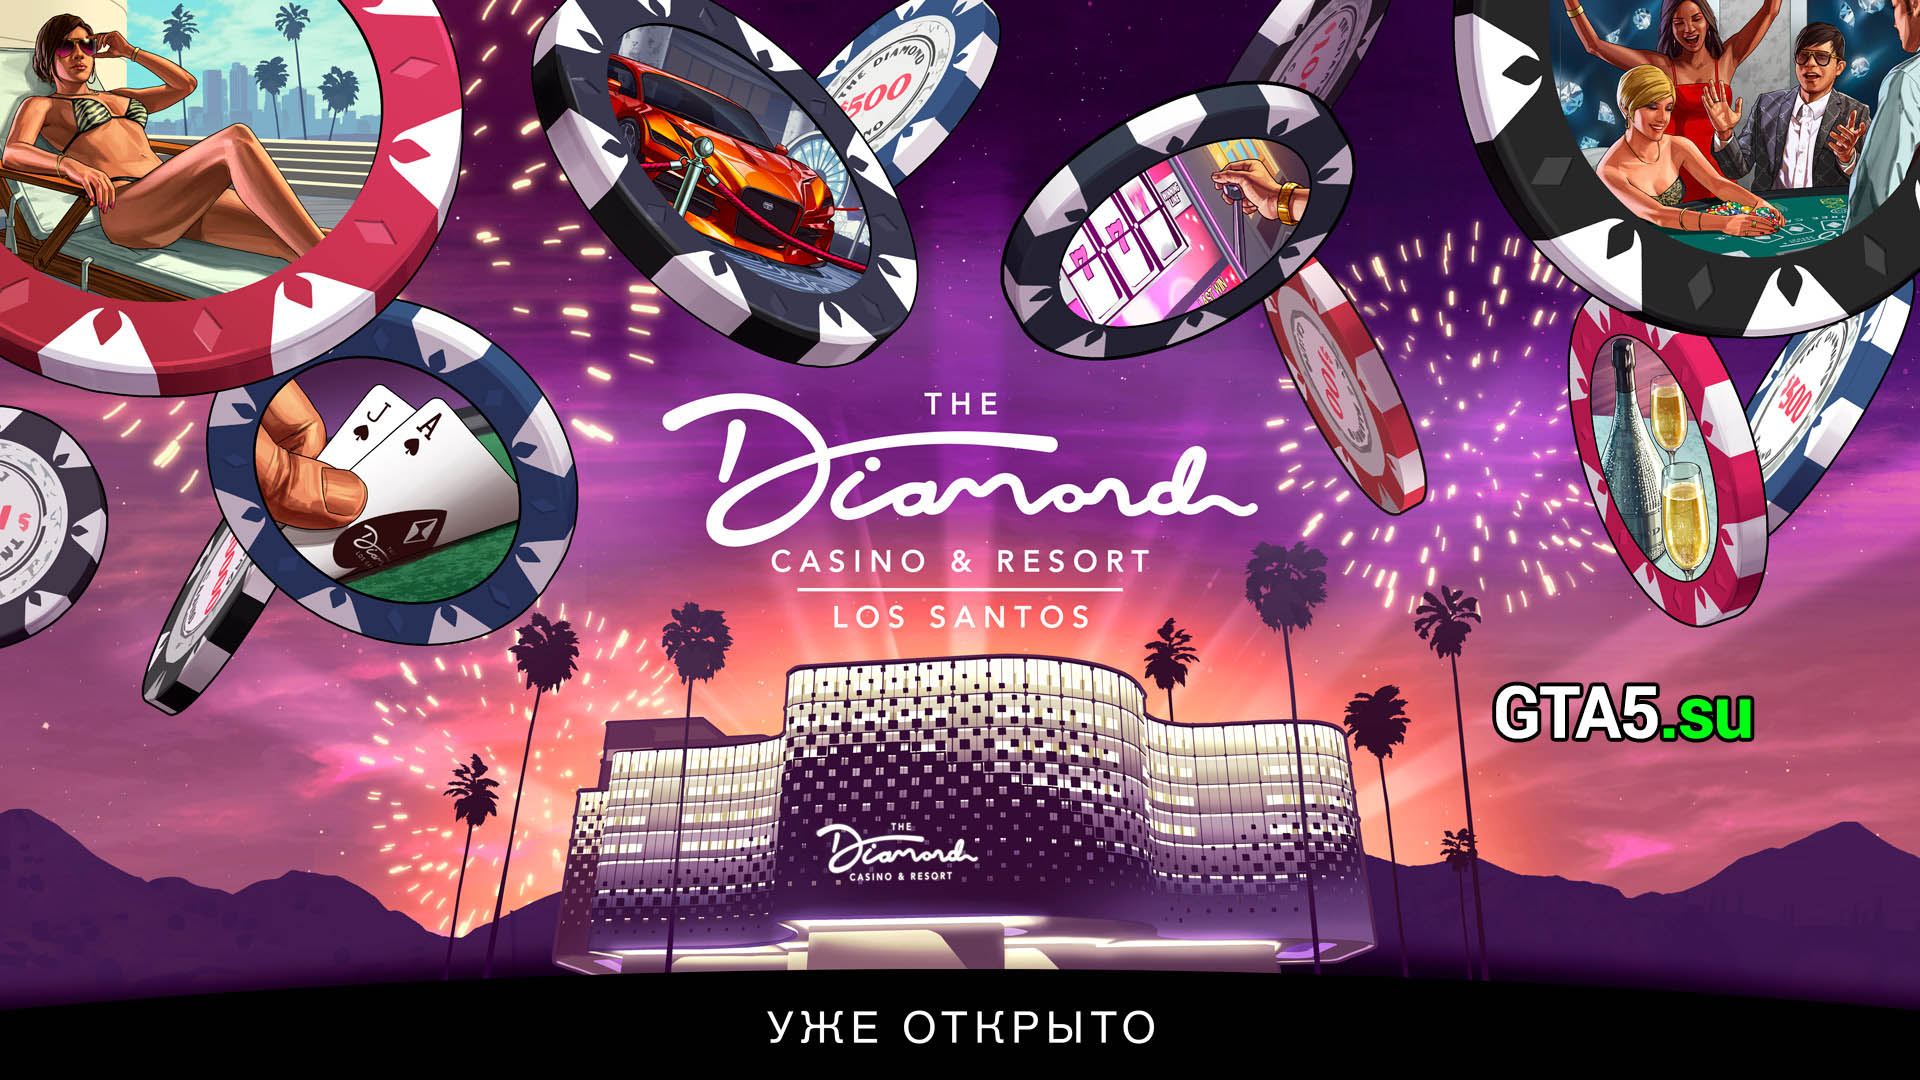 Gta online diamond casino and resort игровые автоматы вероятность выиграть